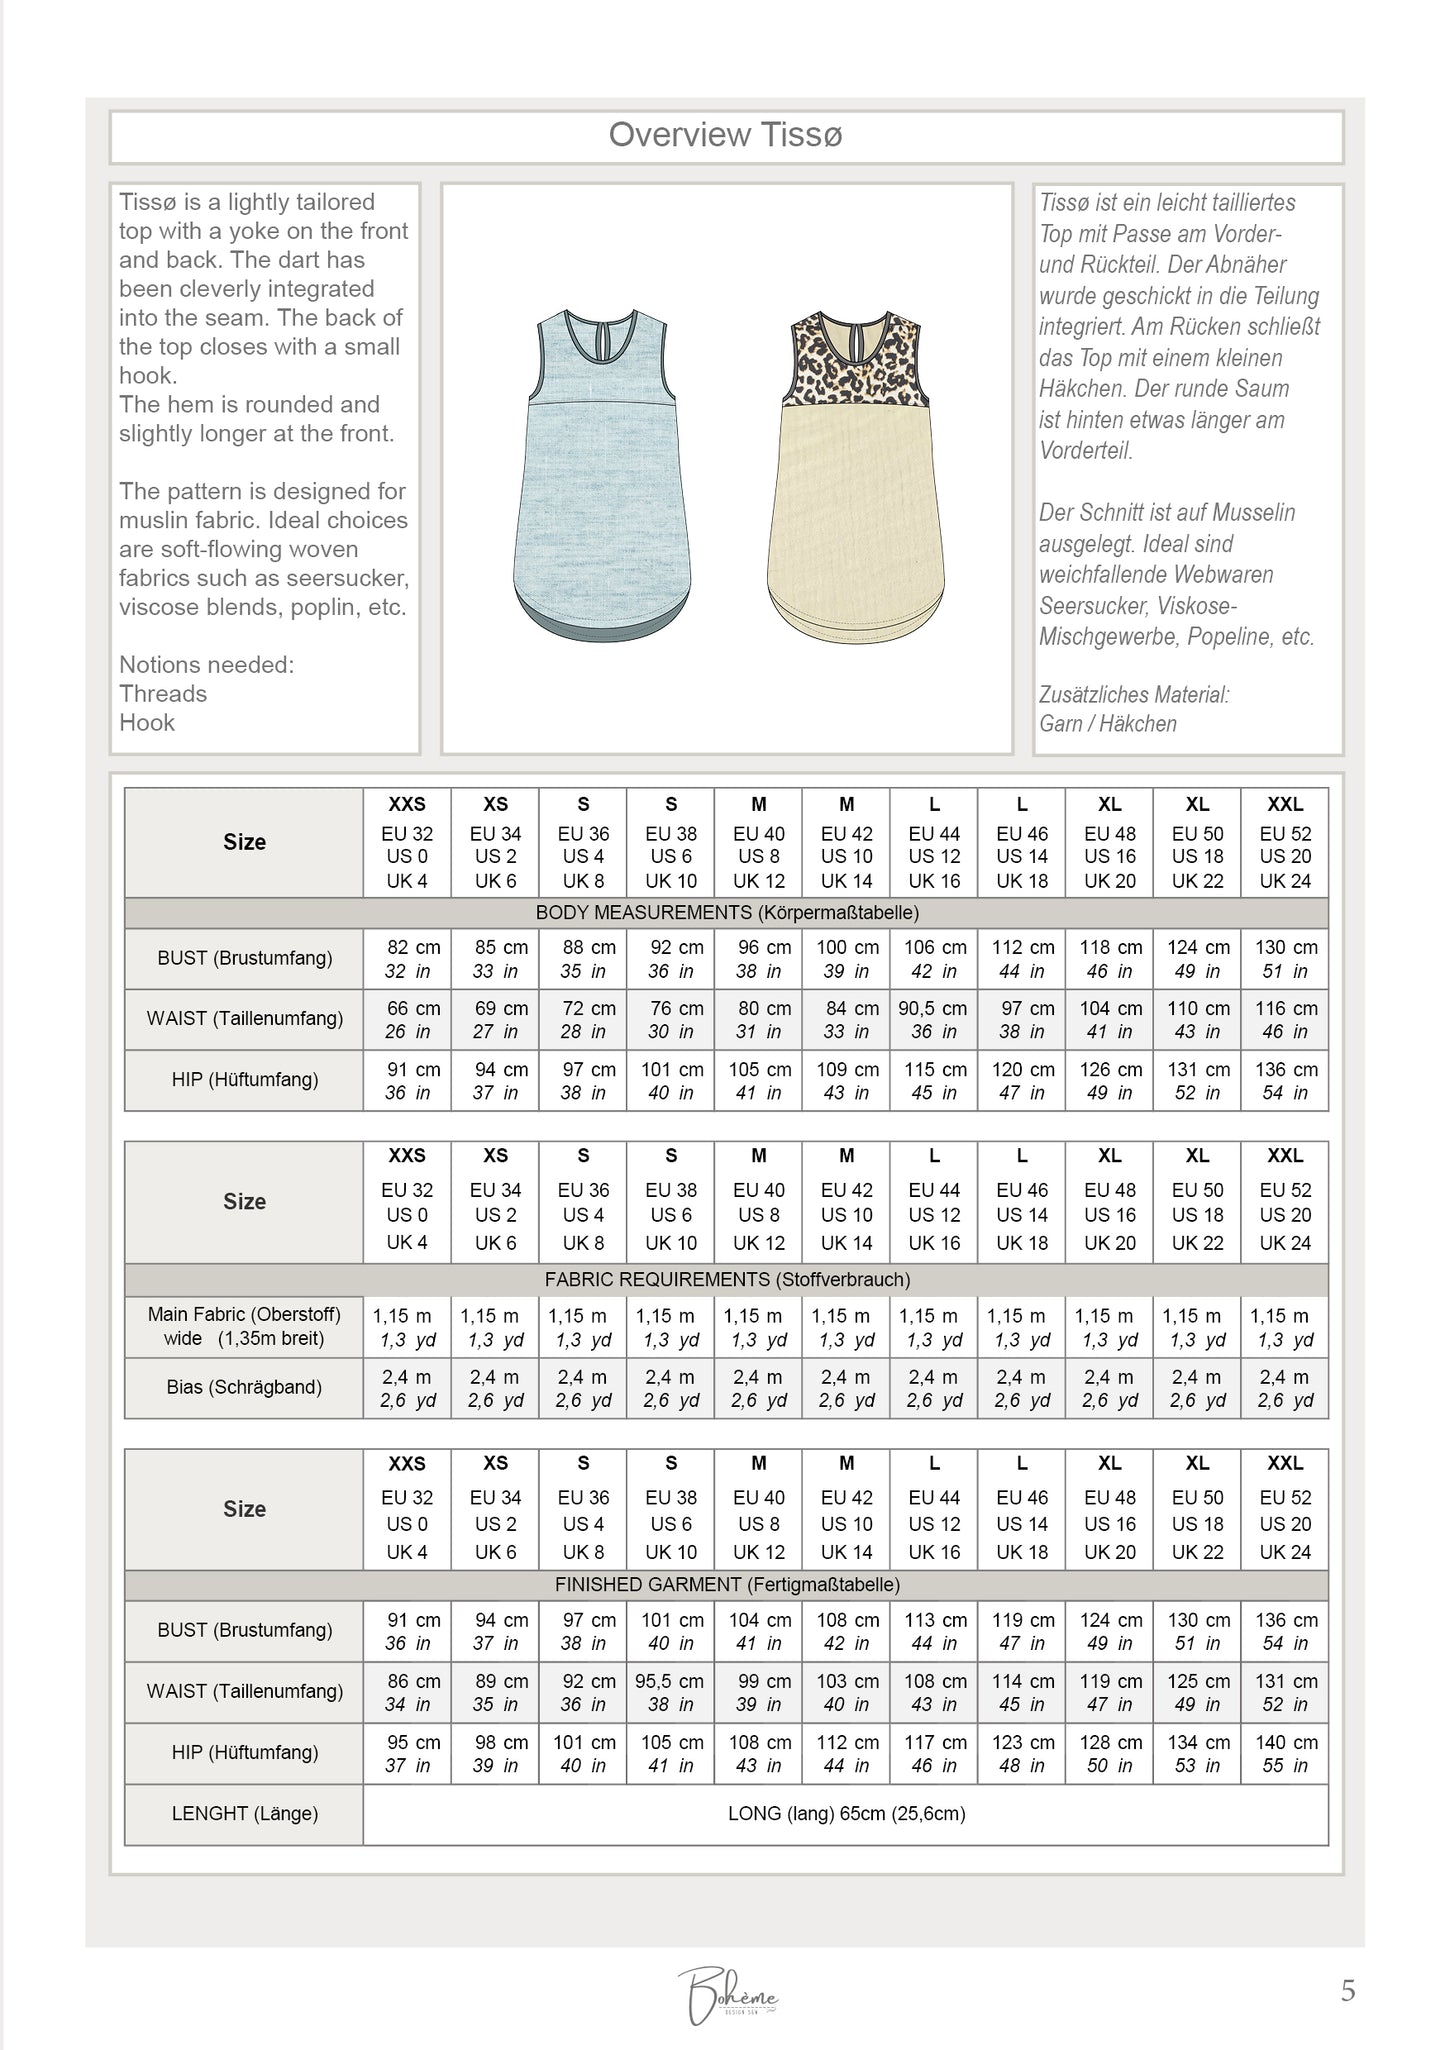 Summer Top | Tissø W1221 | Woman EU32 (XXS) - EU52 (XXL) | Digital Sewing Pattern | PDF